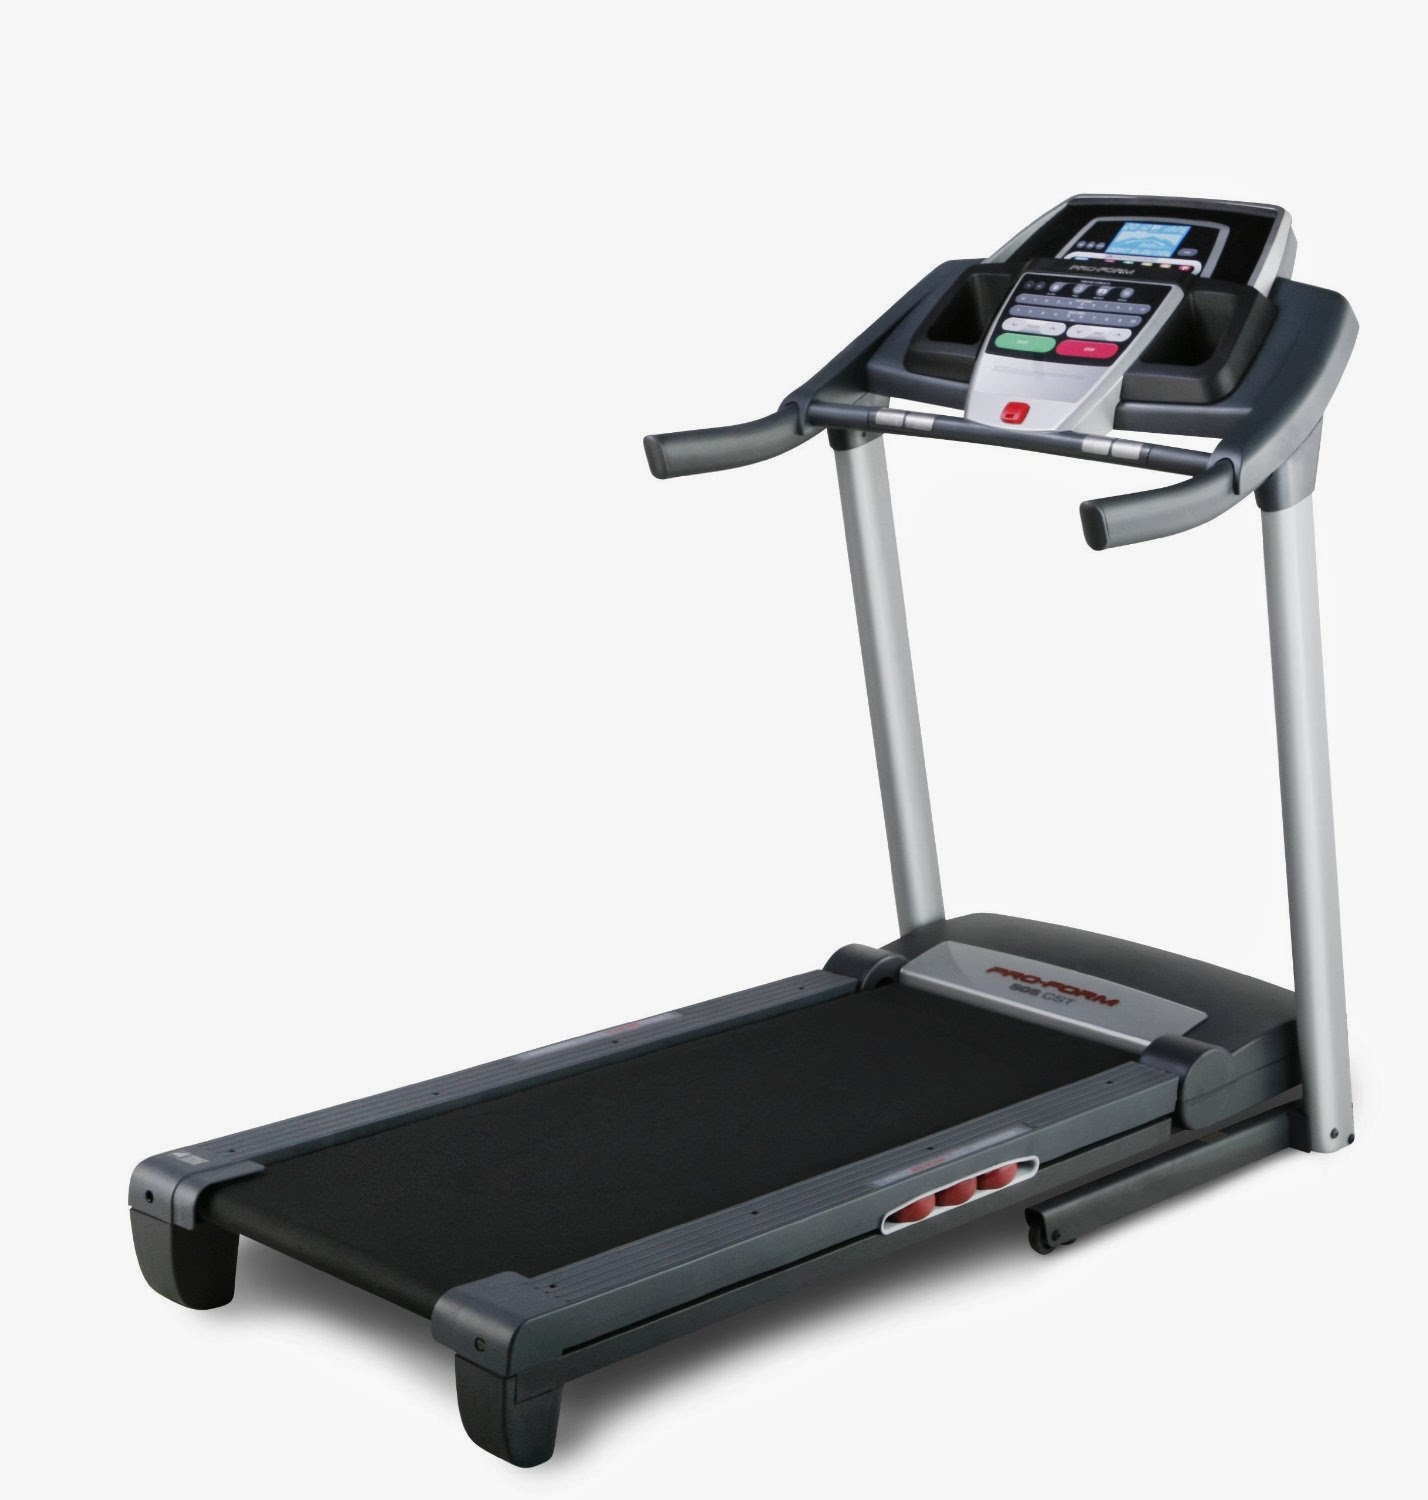 Proform 505 Cst Treadmill Manual